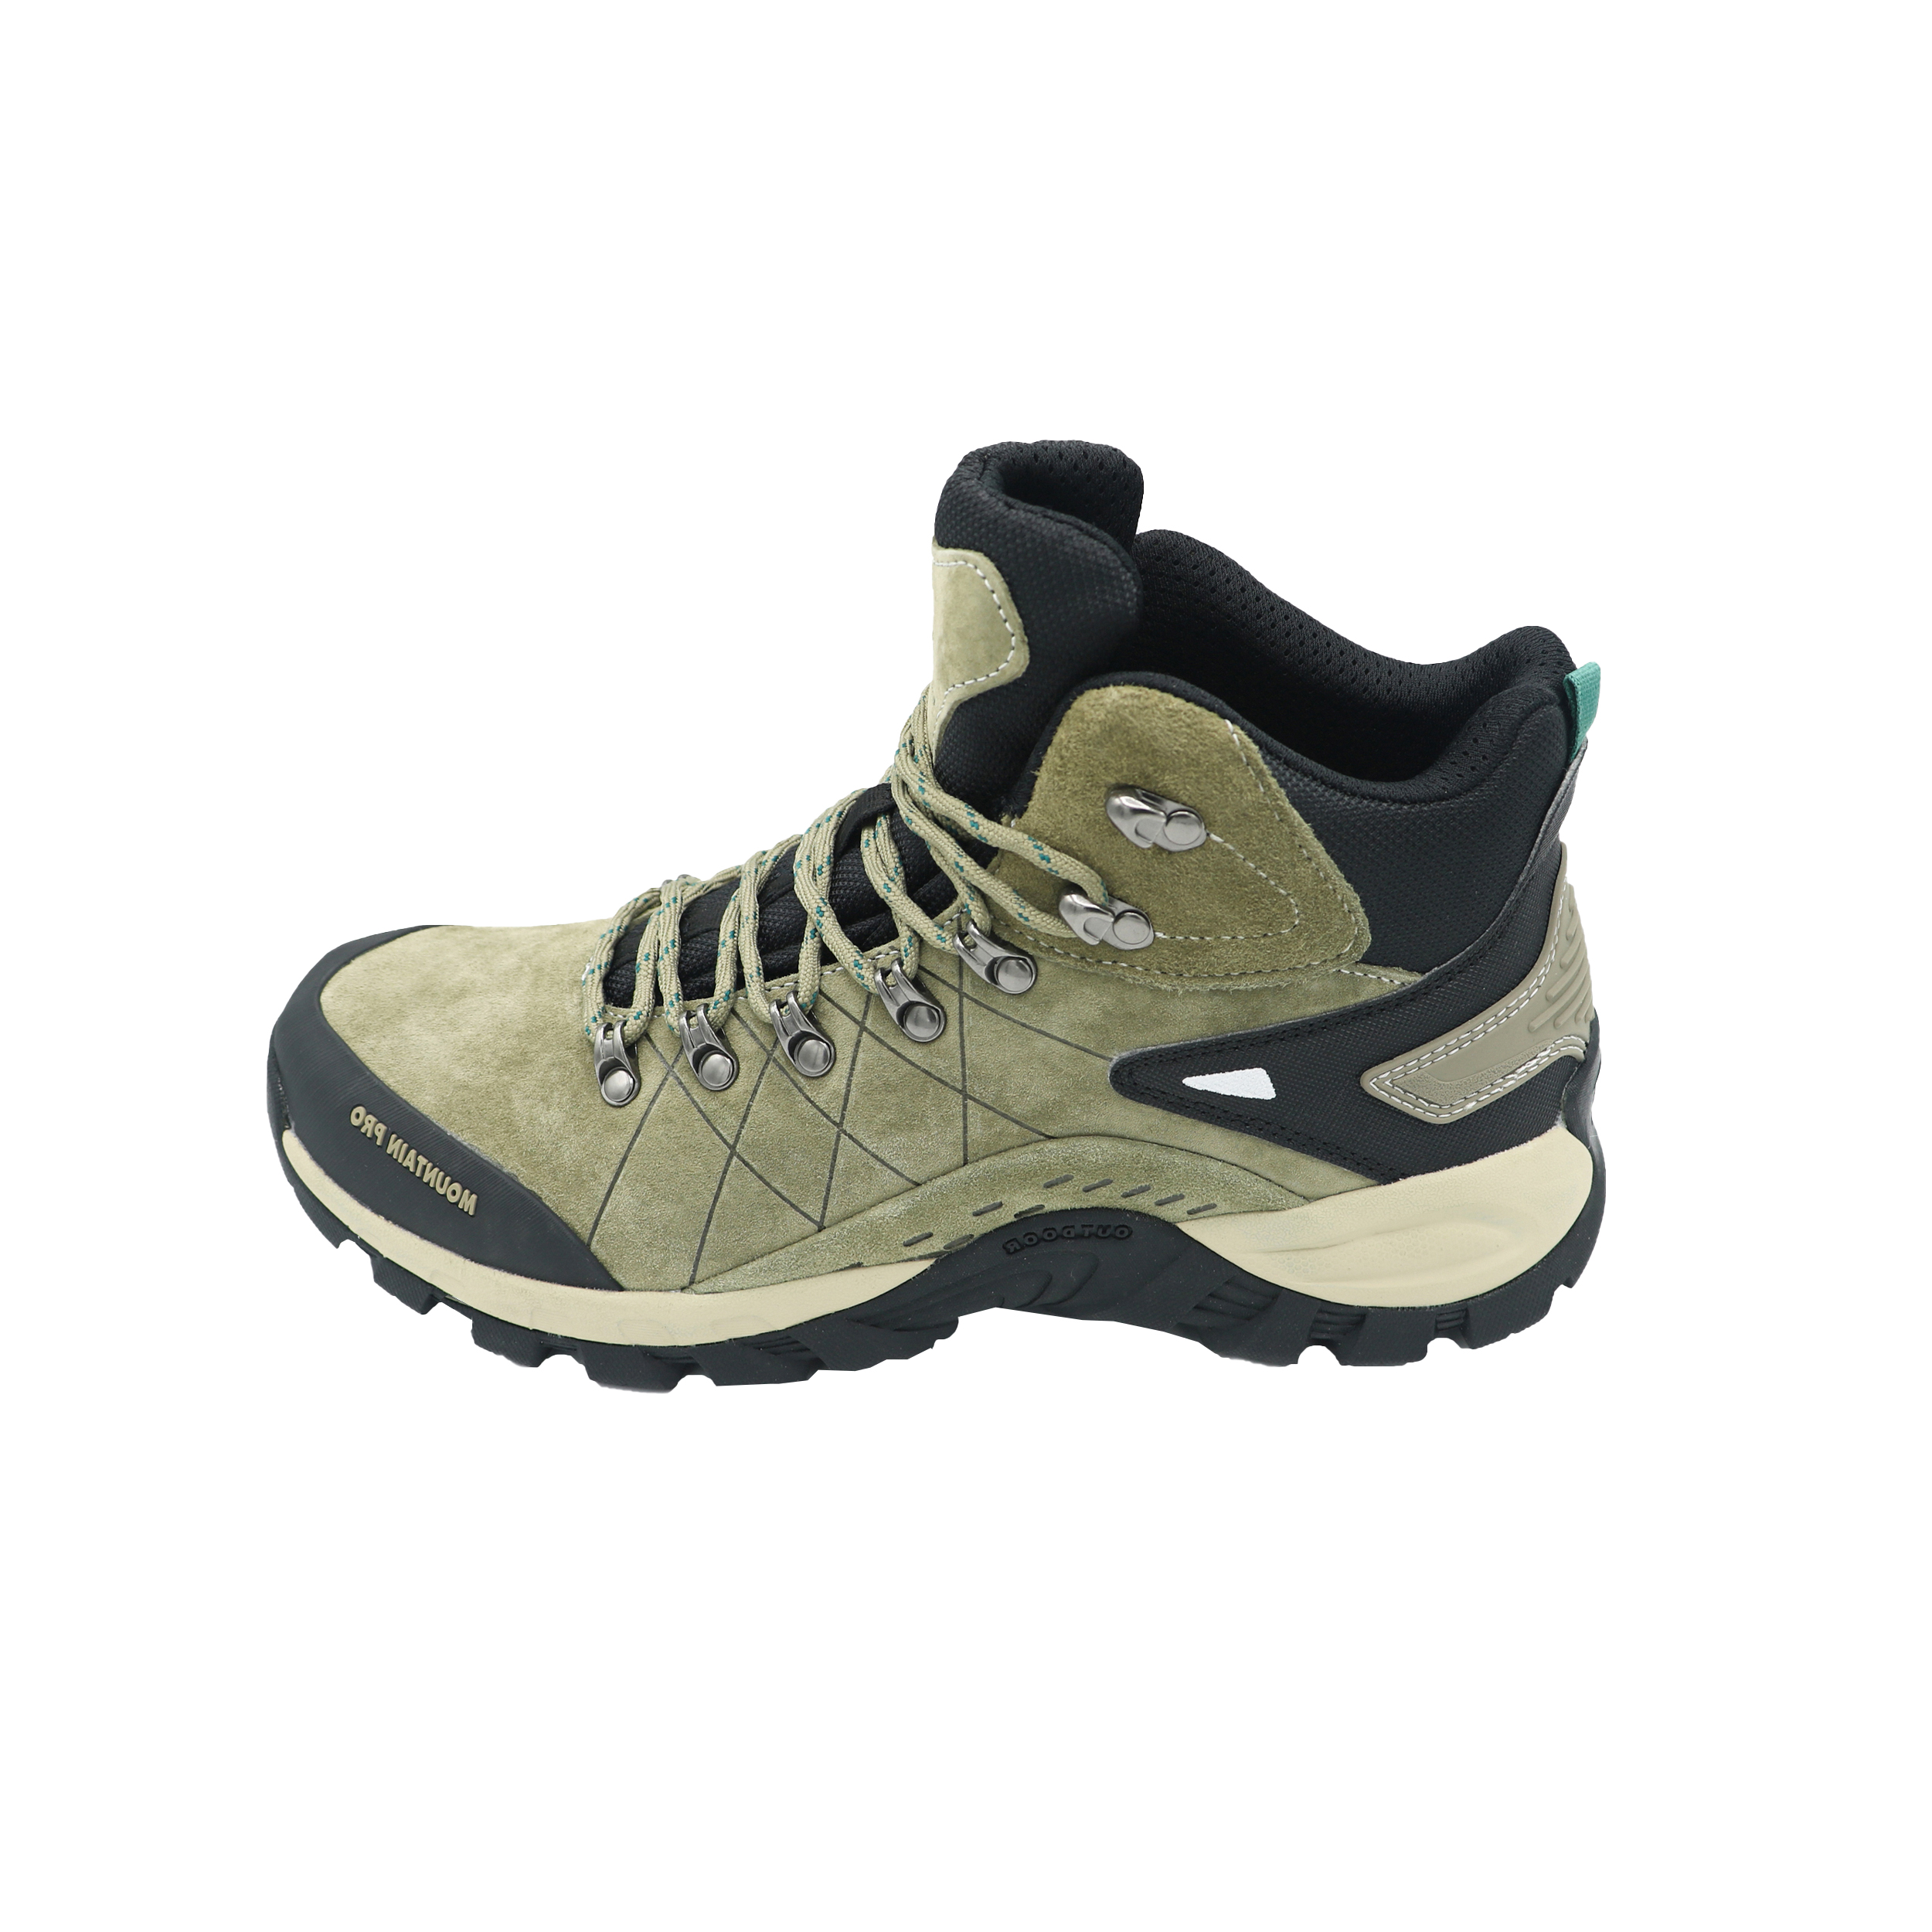 نکته خرید - قیمت روز کفش کوهنوردی مردانه ماونتین پرو مدل 1017k خرید